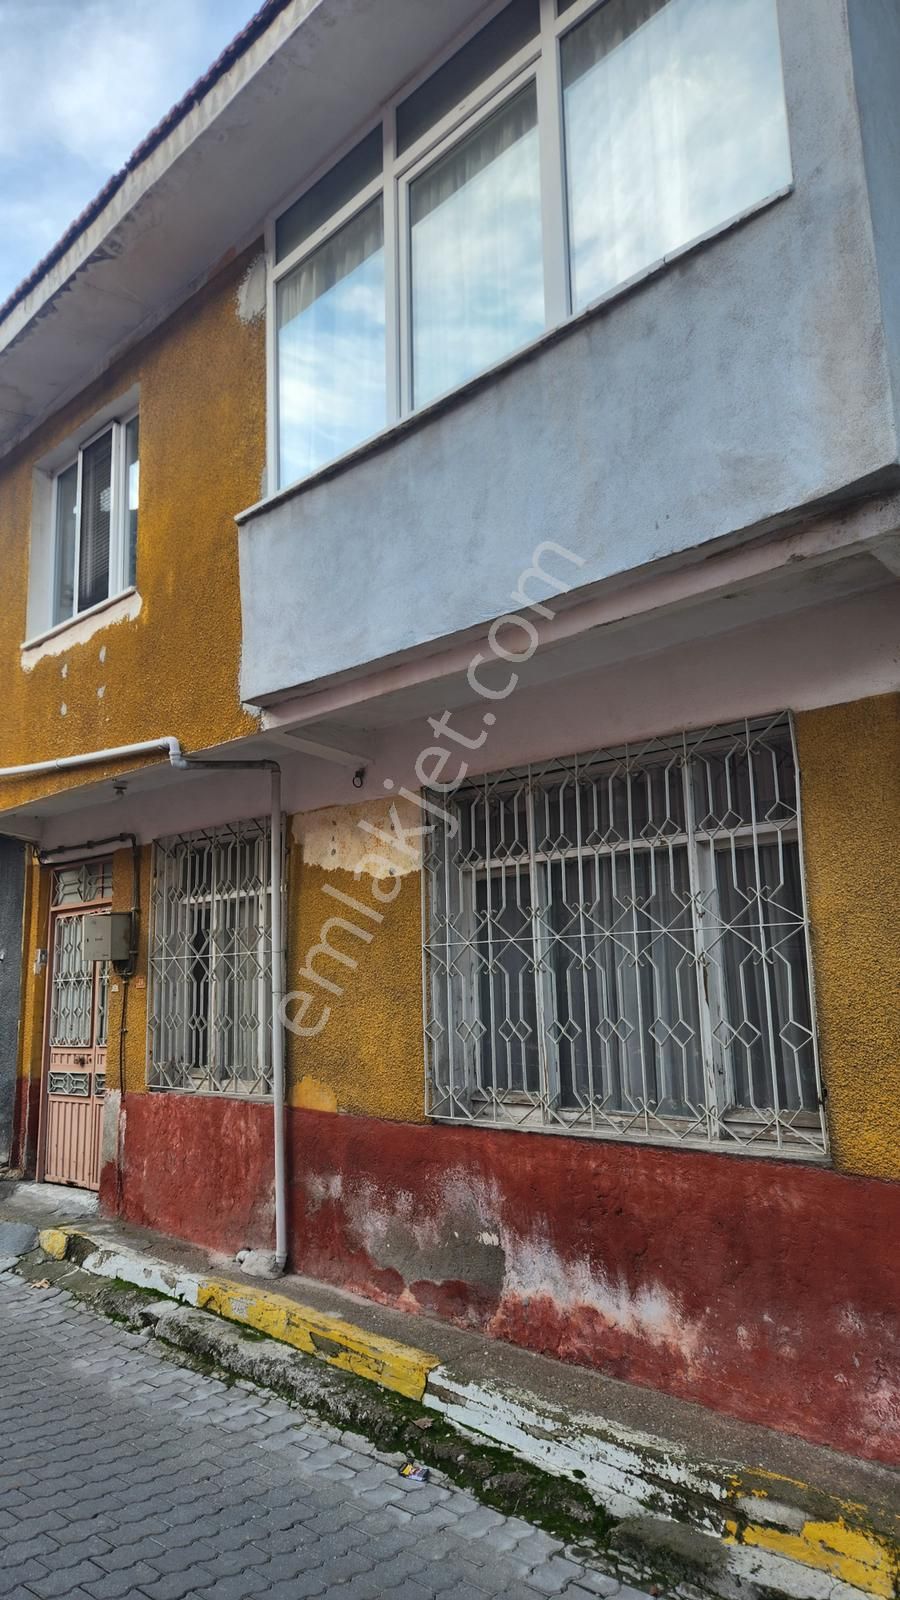 Kırkağaç Bakır Satılık Müstakil Ev  bakır mahallesi, kasapoğlu sokakta 2 katlı ve teraslı müstakil